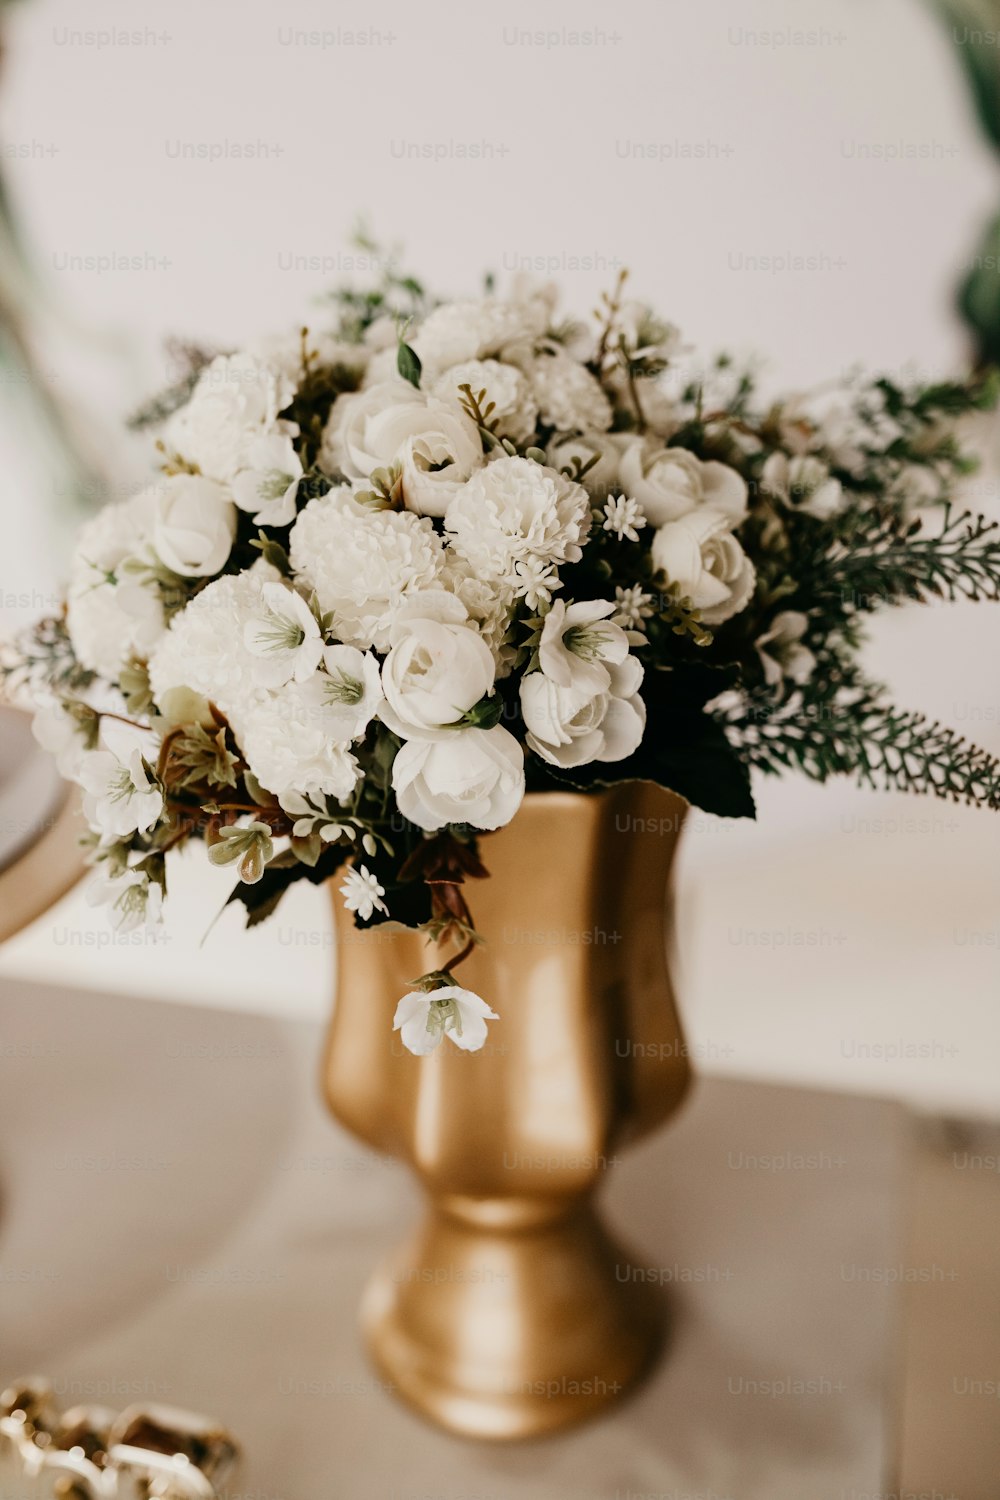 Un jarrón de oro lleno de flores blancas encima de una mesa